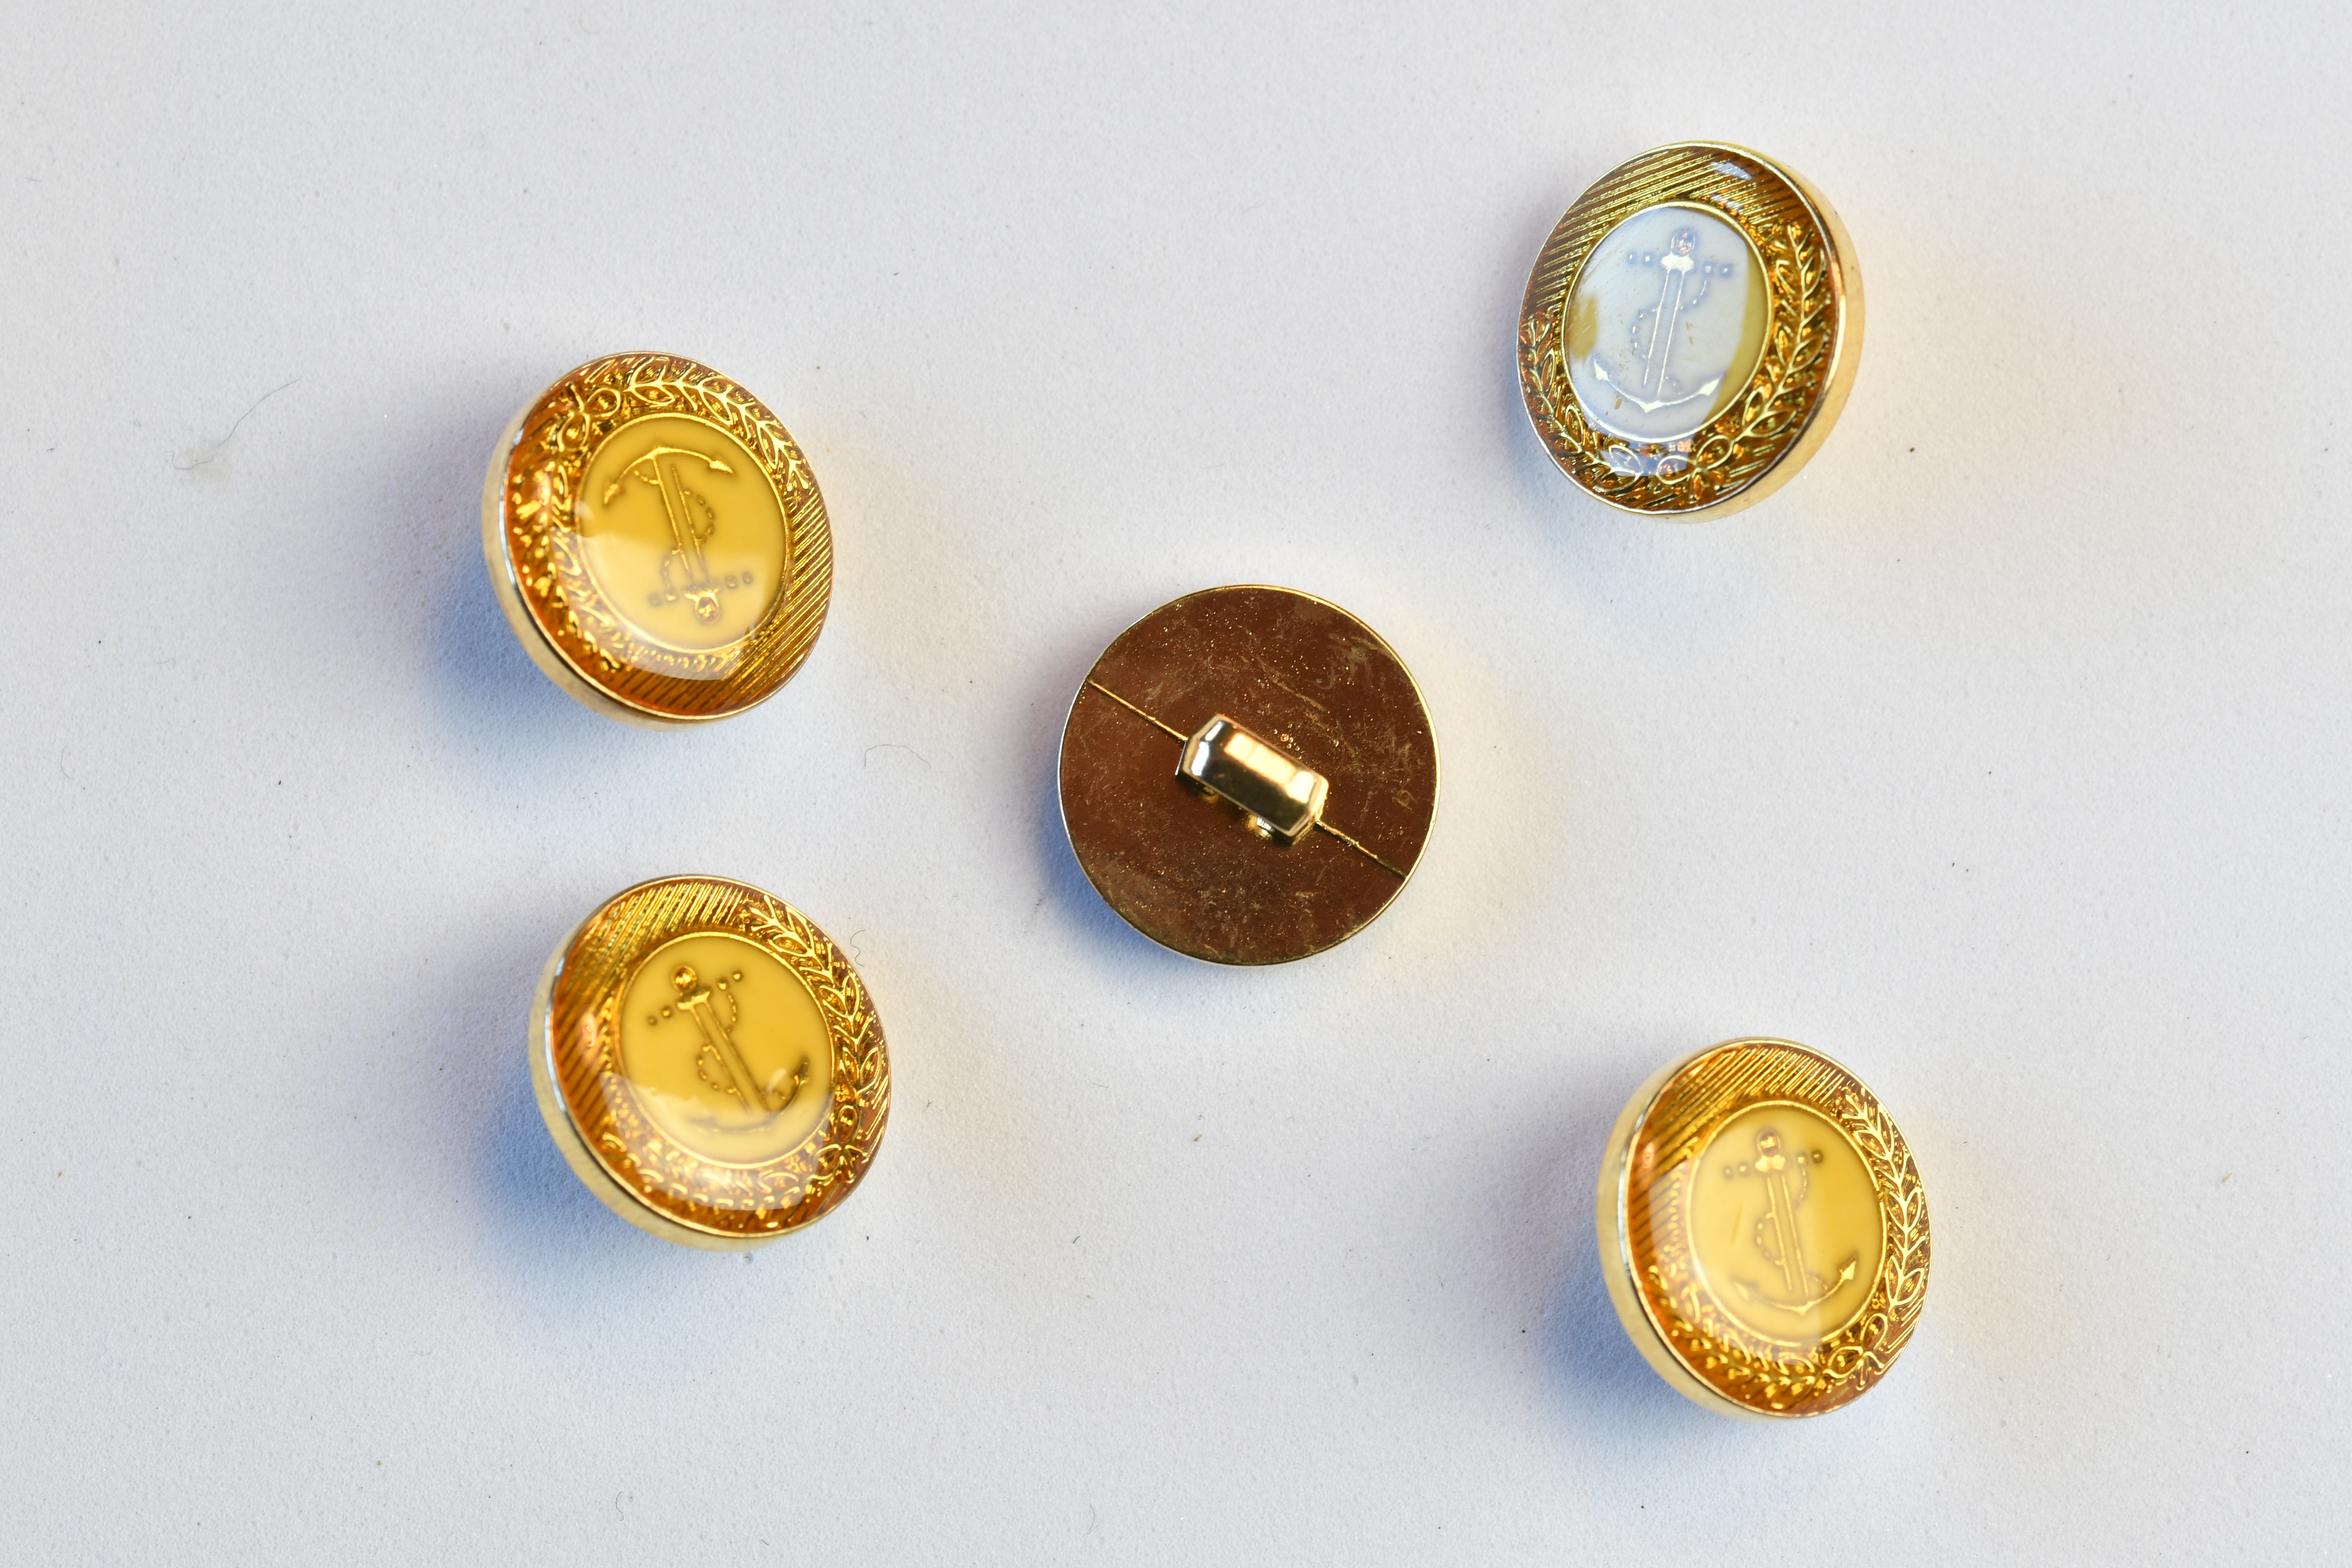 grube helvede arkiv Guld knap med Anker 15 mm - knap gul-sølv-kobber-bronce - Tante Hanne